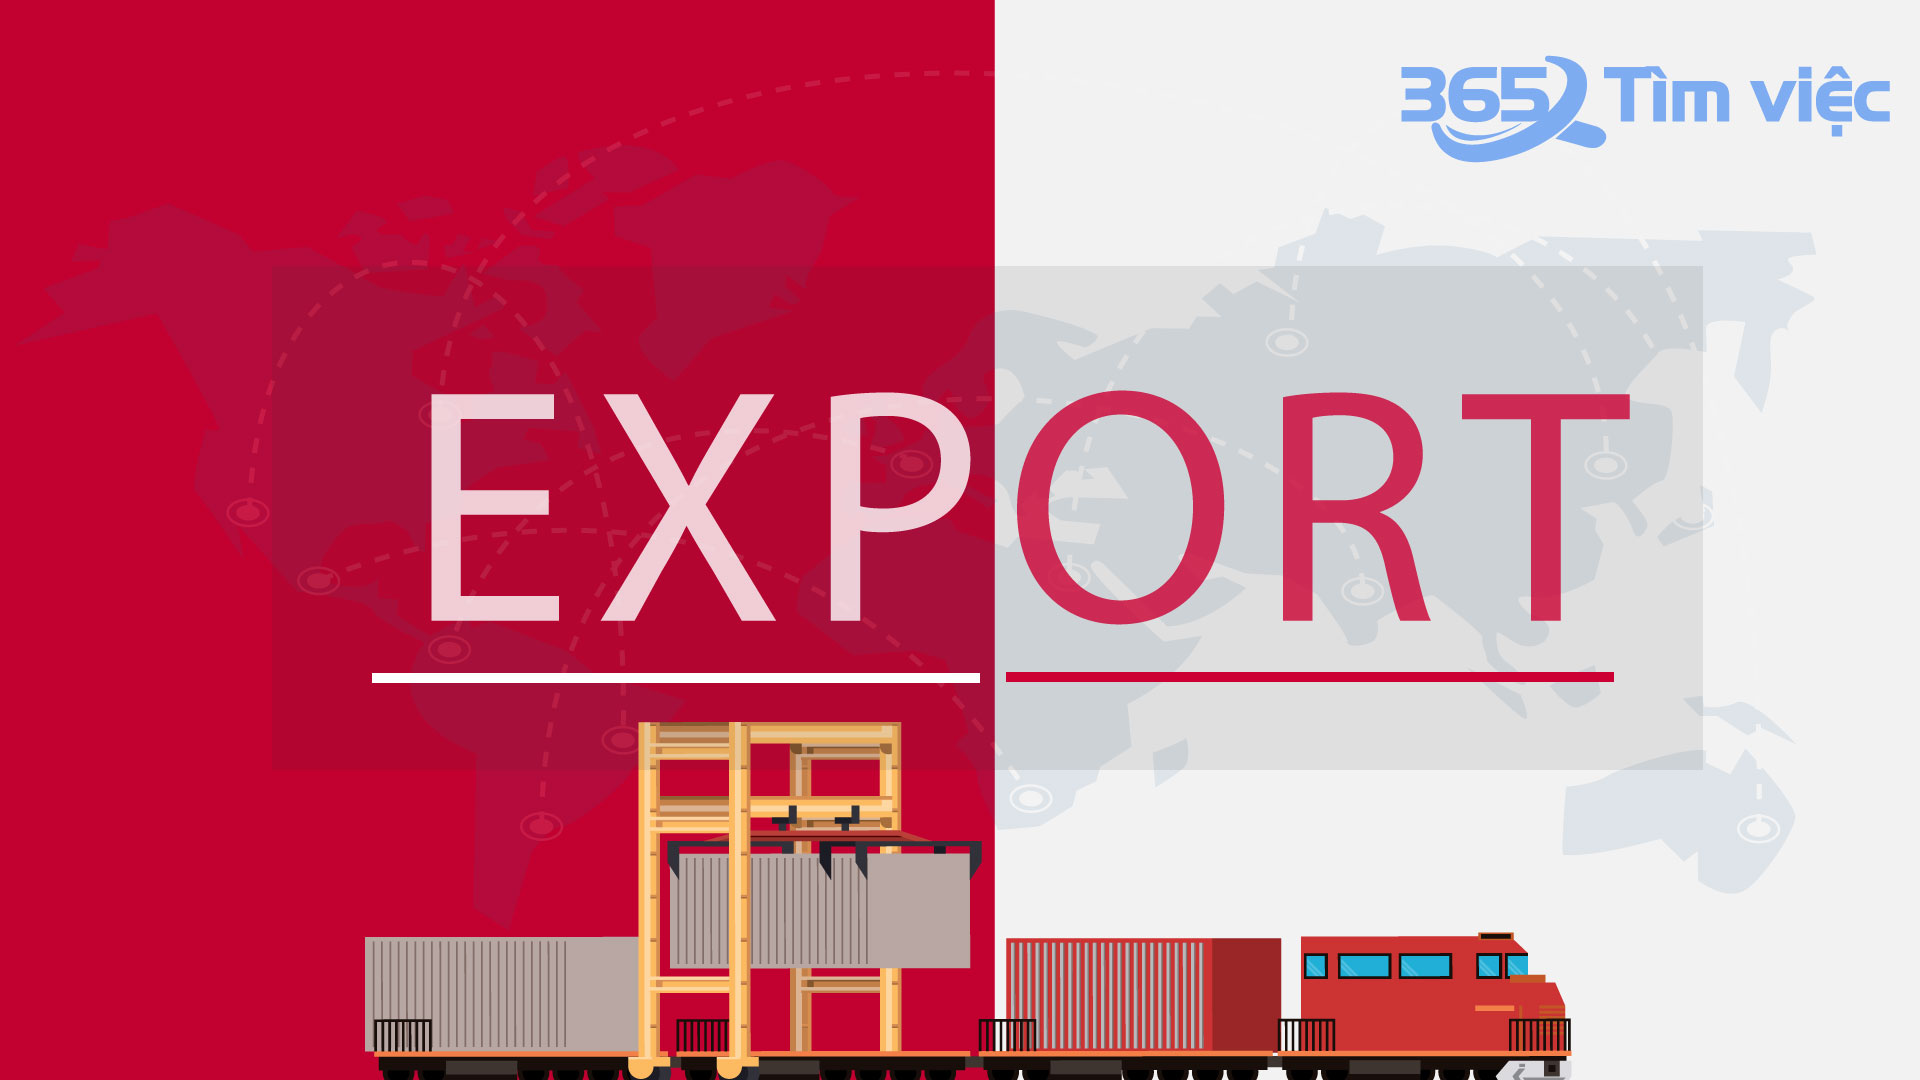 Lấy Xuất nhập khẩu làm trọng tâm thúc đẩy phát triển kinh tế